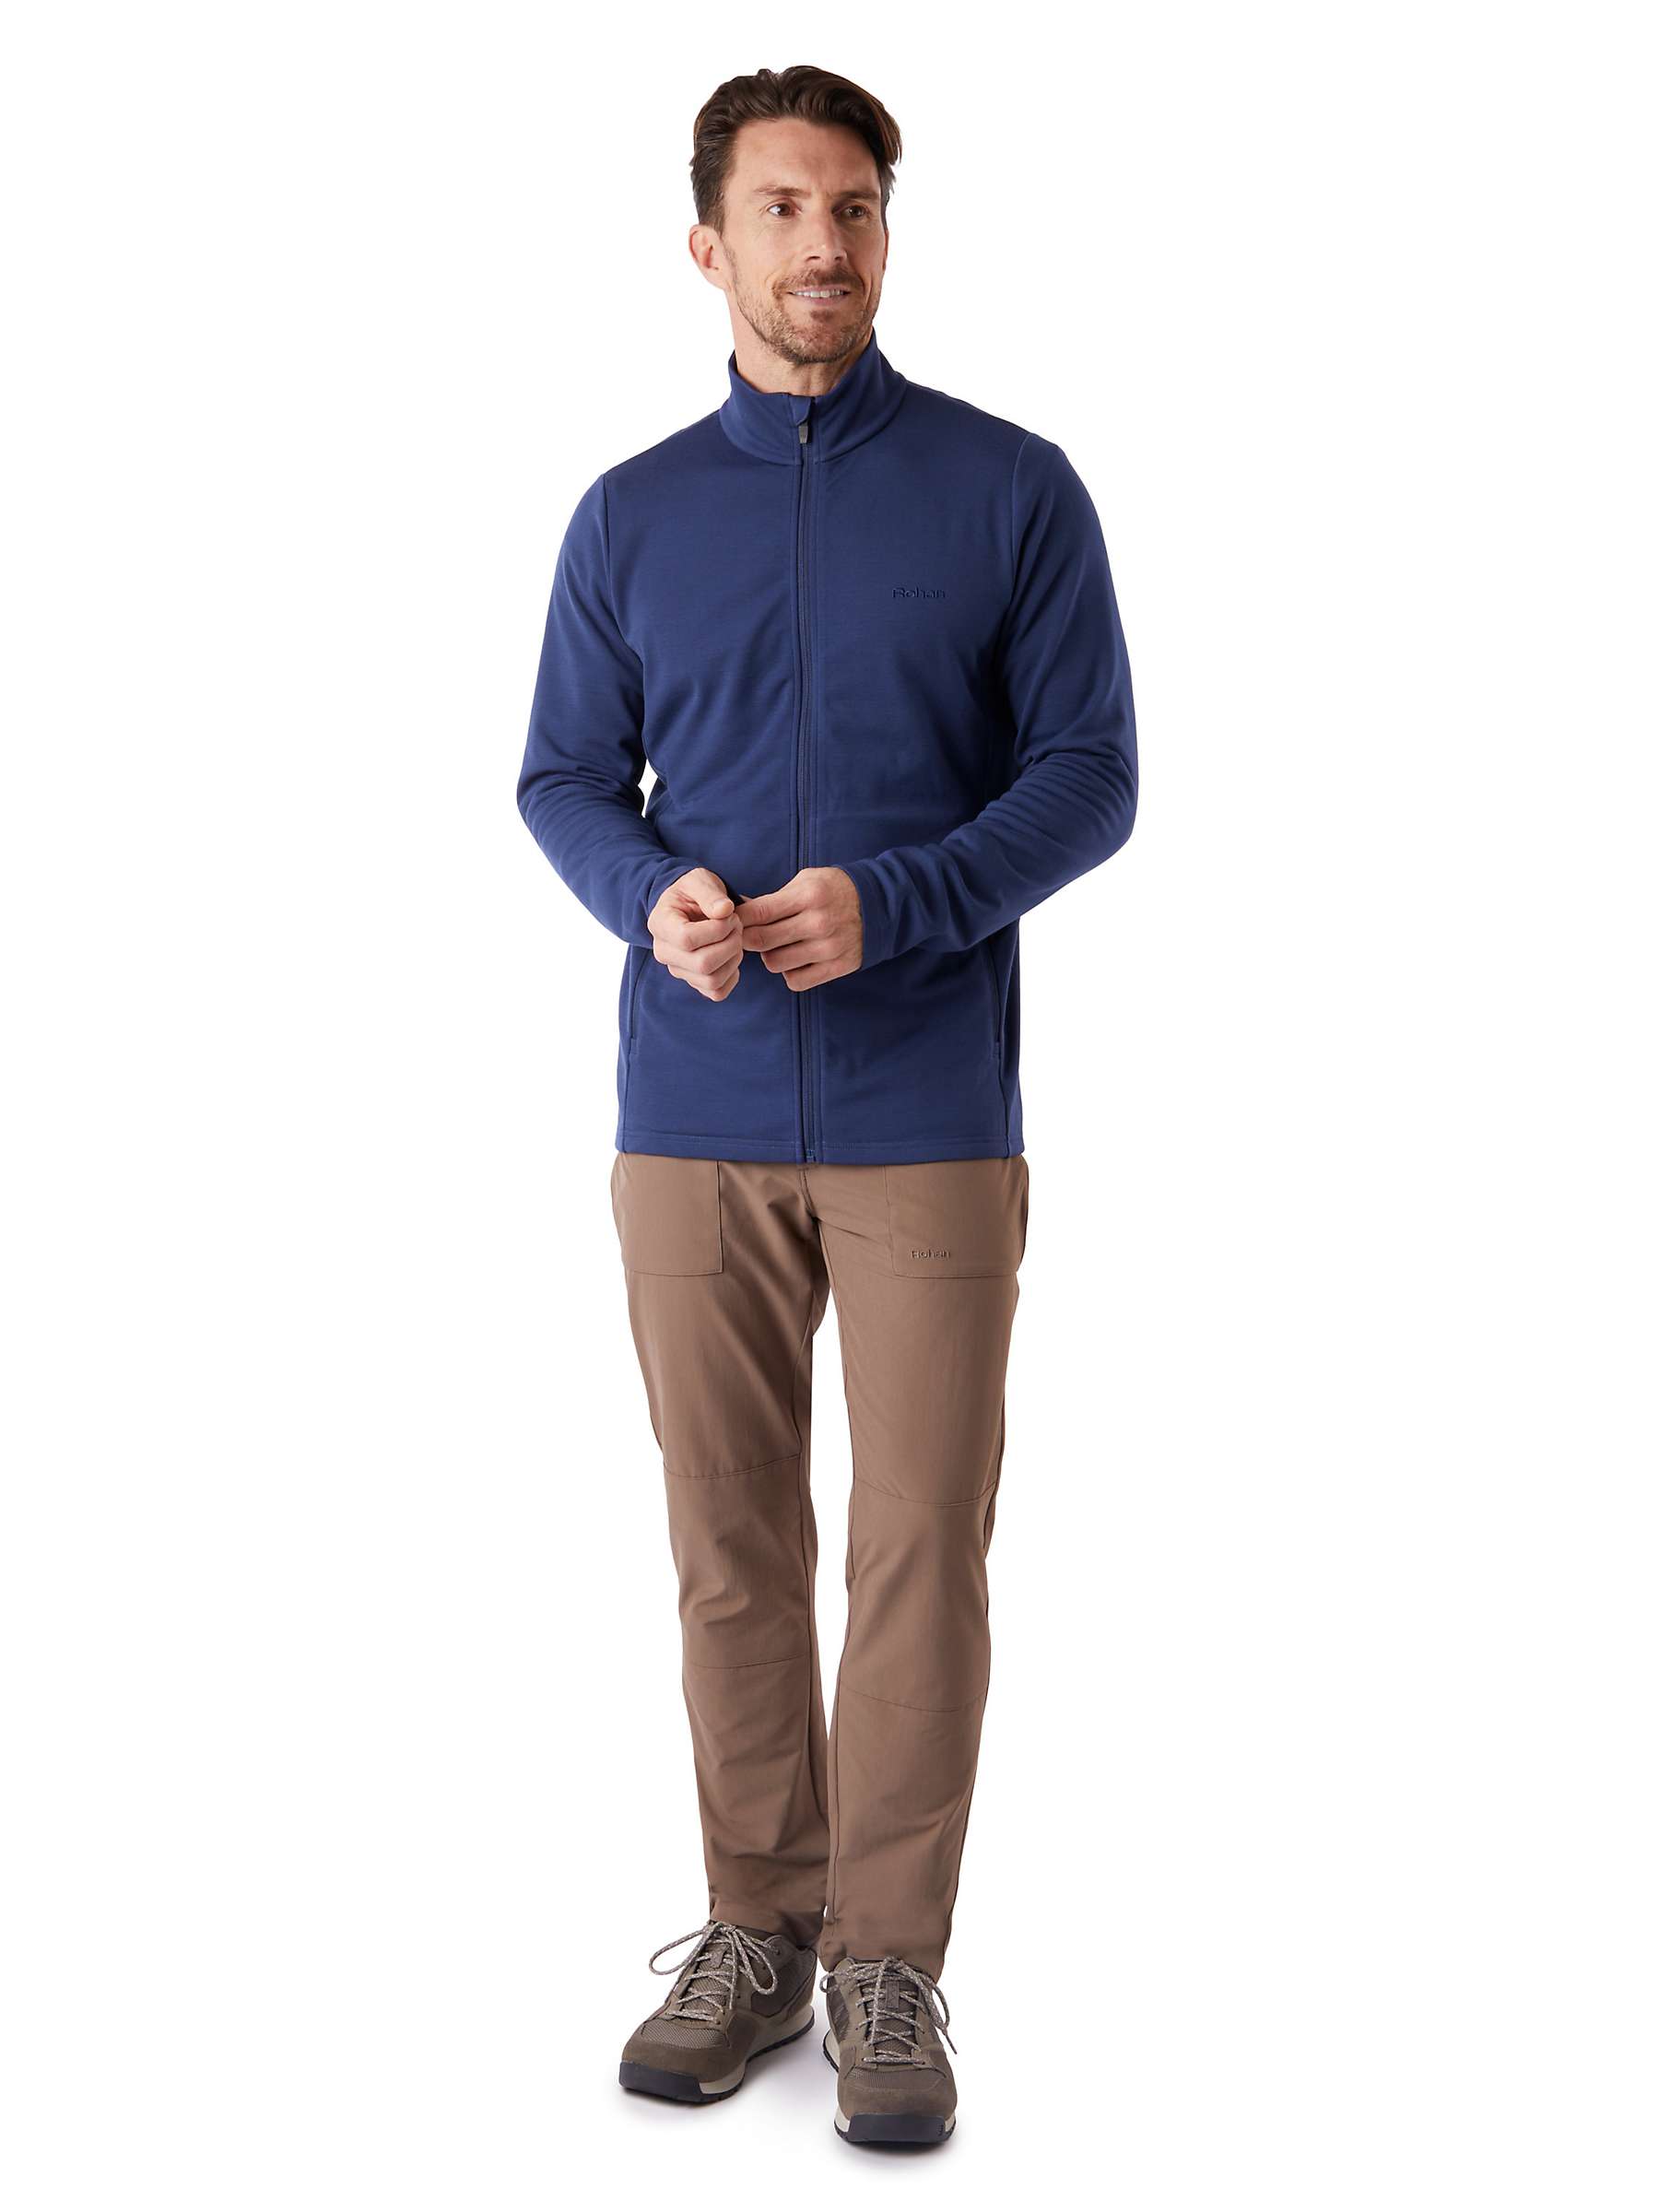 Buy Rohan Men's Radiant Merino Wool Blend Zip Up Fleece Jacket Online at johnlewis.com